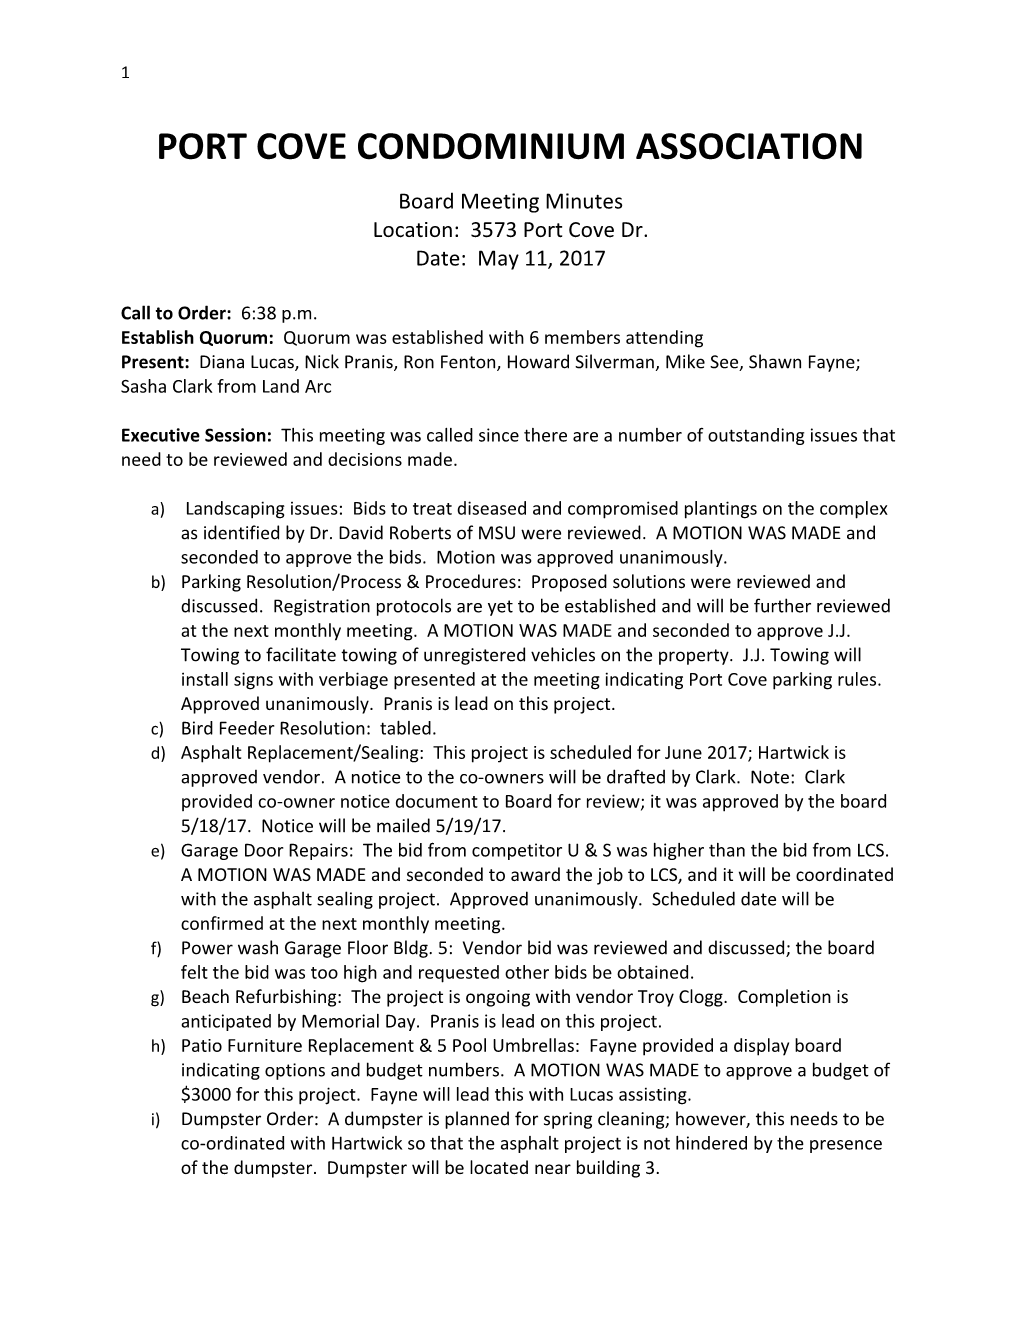 Port Cove Condominium Association